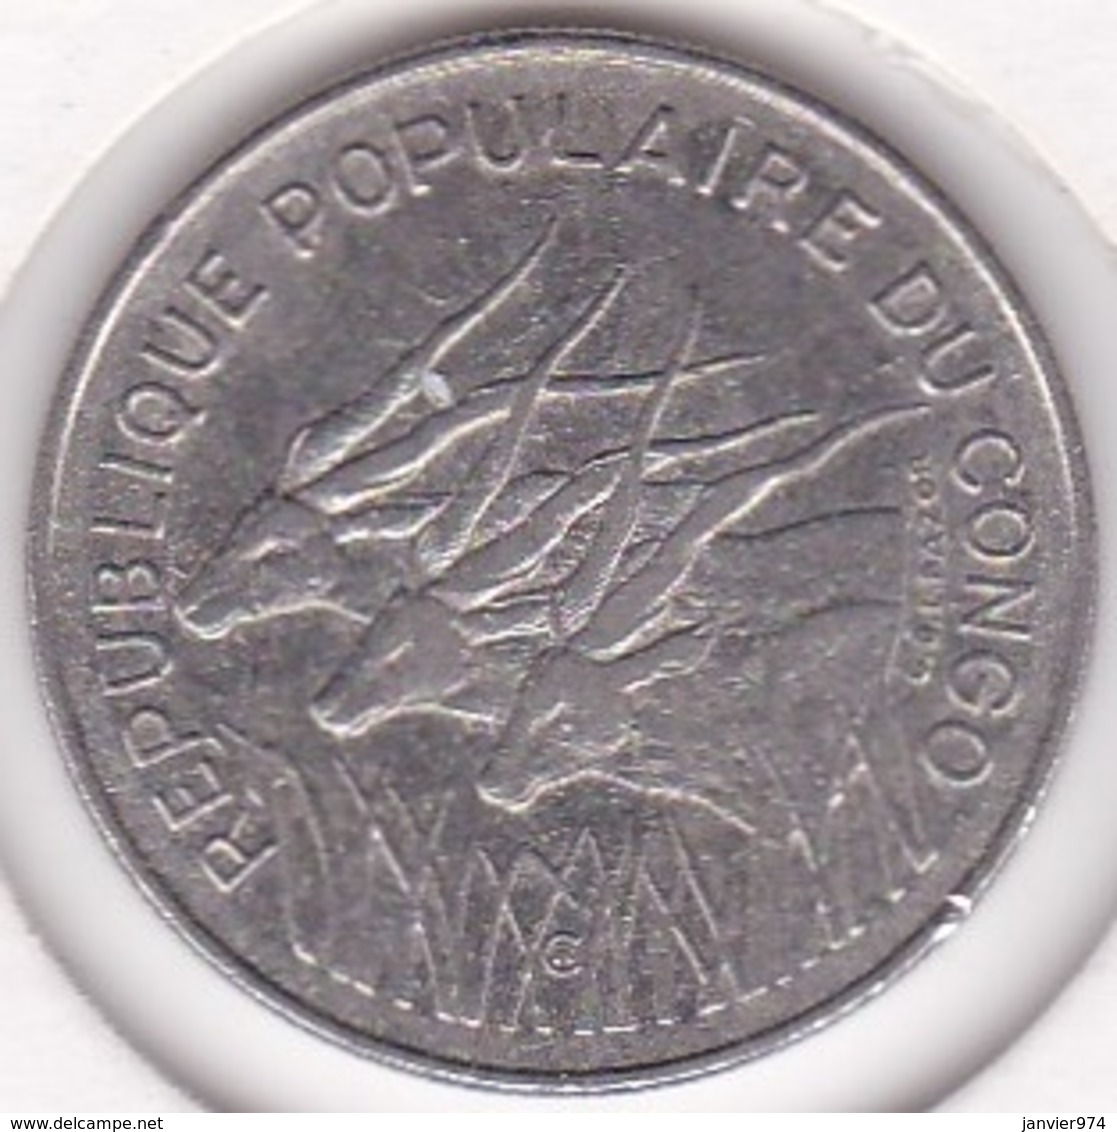 Republique Populaire Du Congo. 100 Francs 1972, En Nickel. KM# 1 - Congo (République 1960)